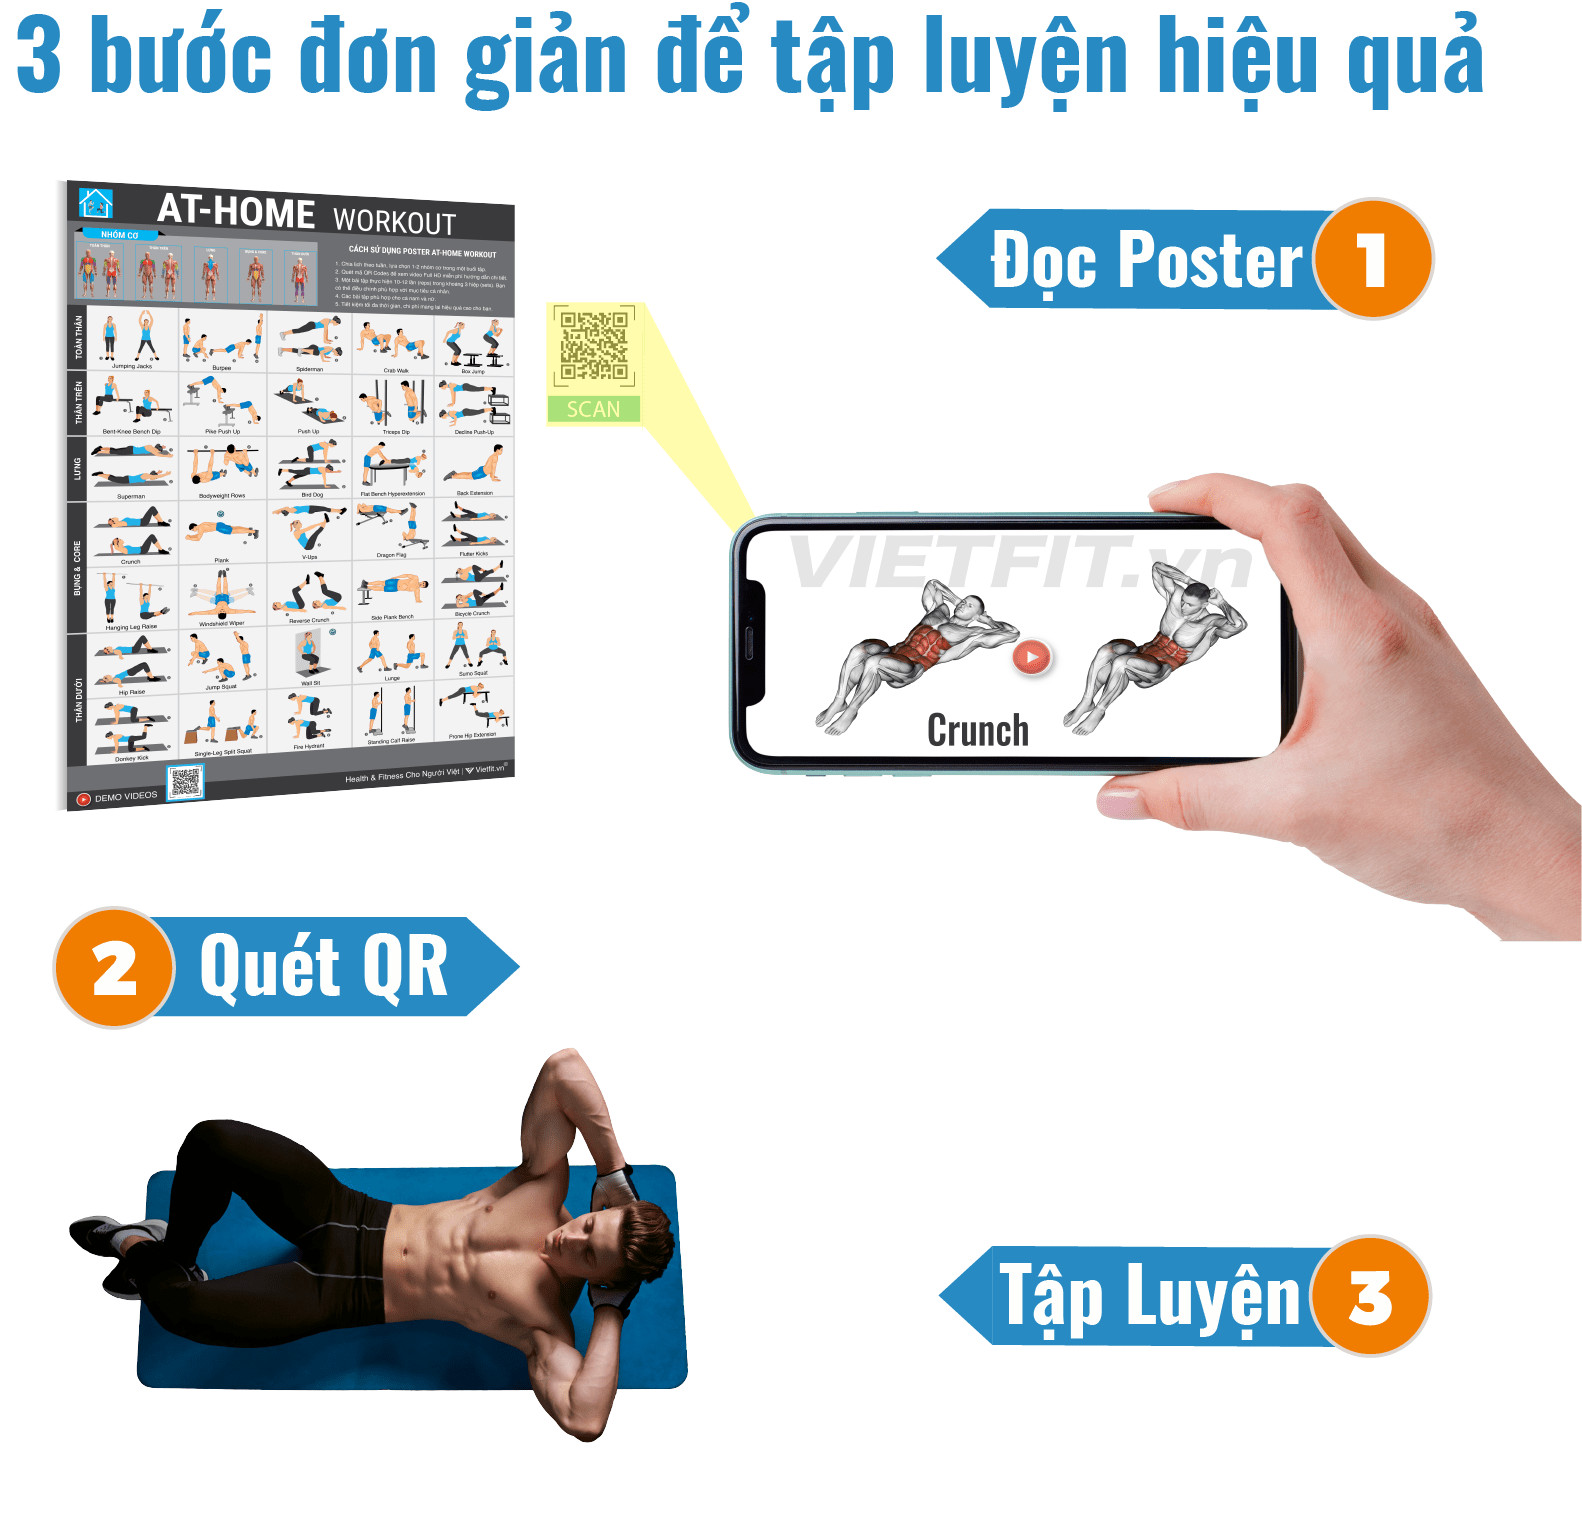 Poster Fitness At Home Workout hướng dẫn tập GYM tại nhà